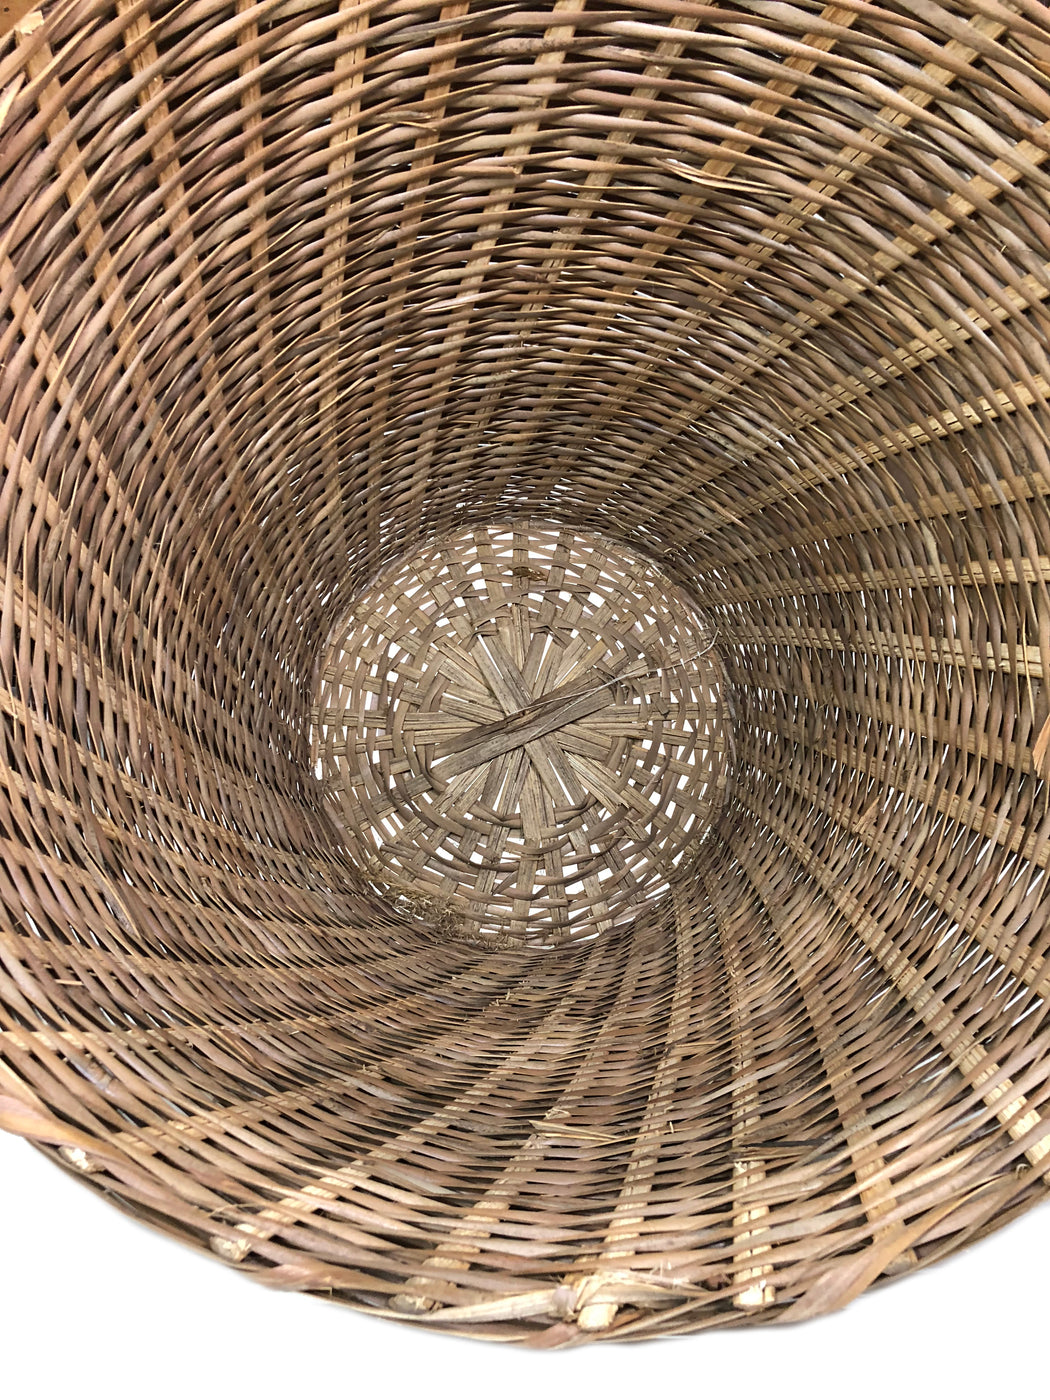 Woven Palm Frond Basket - "V" Shaped - Niger Bend